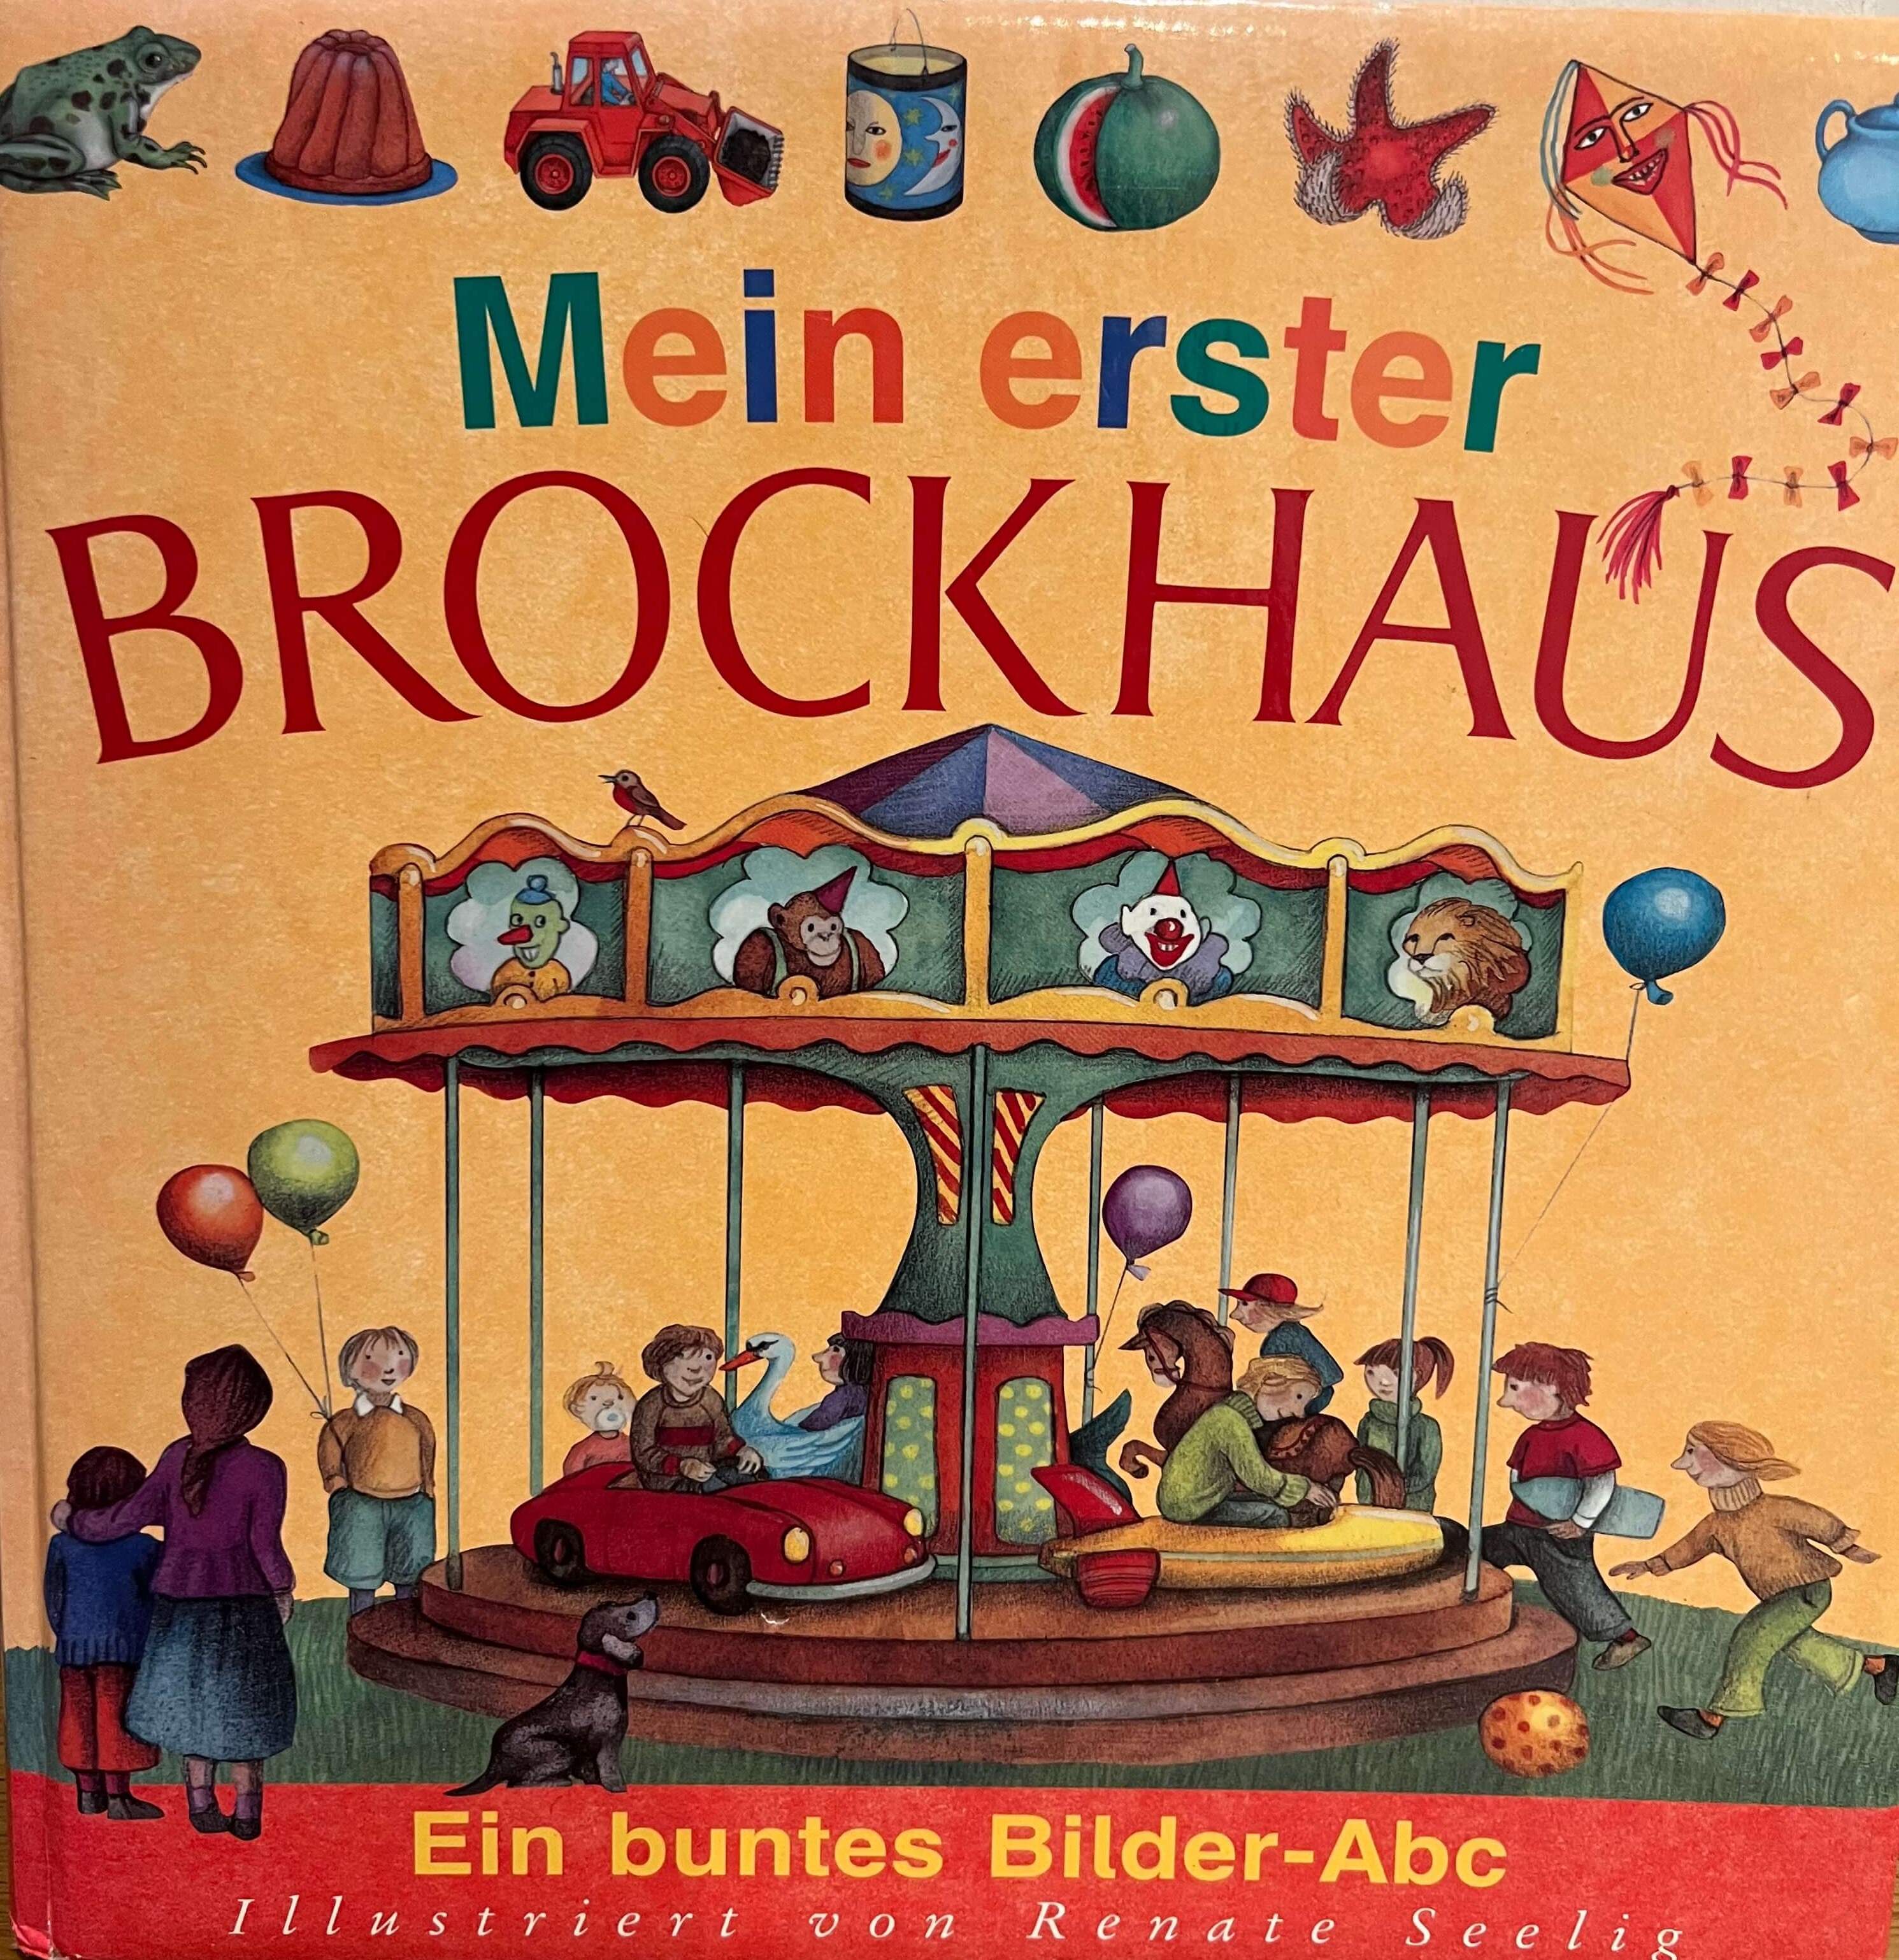 Mein erster Brockhaus - Ein buntes Bilder-Abc